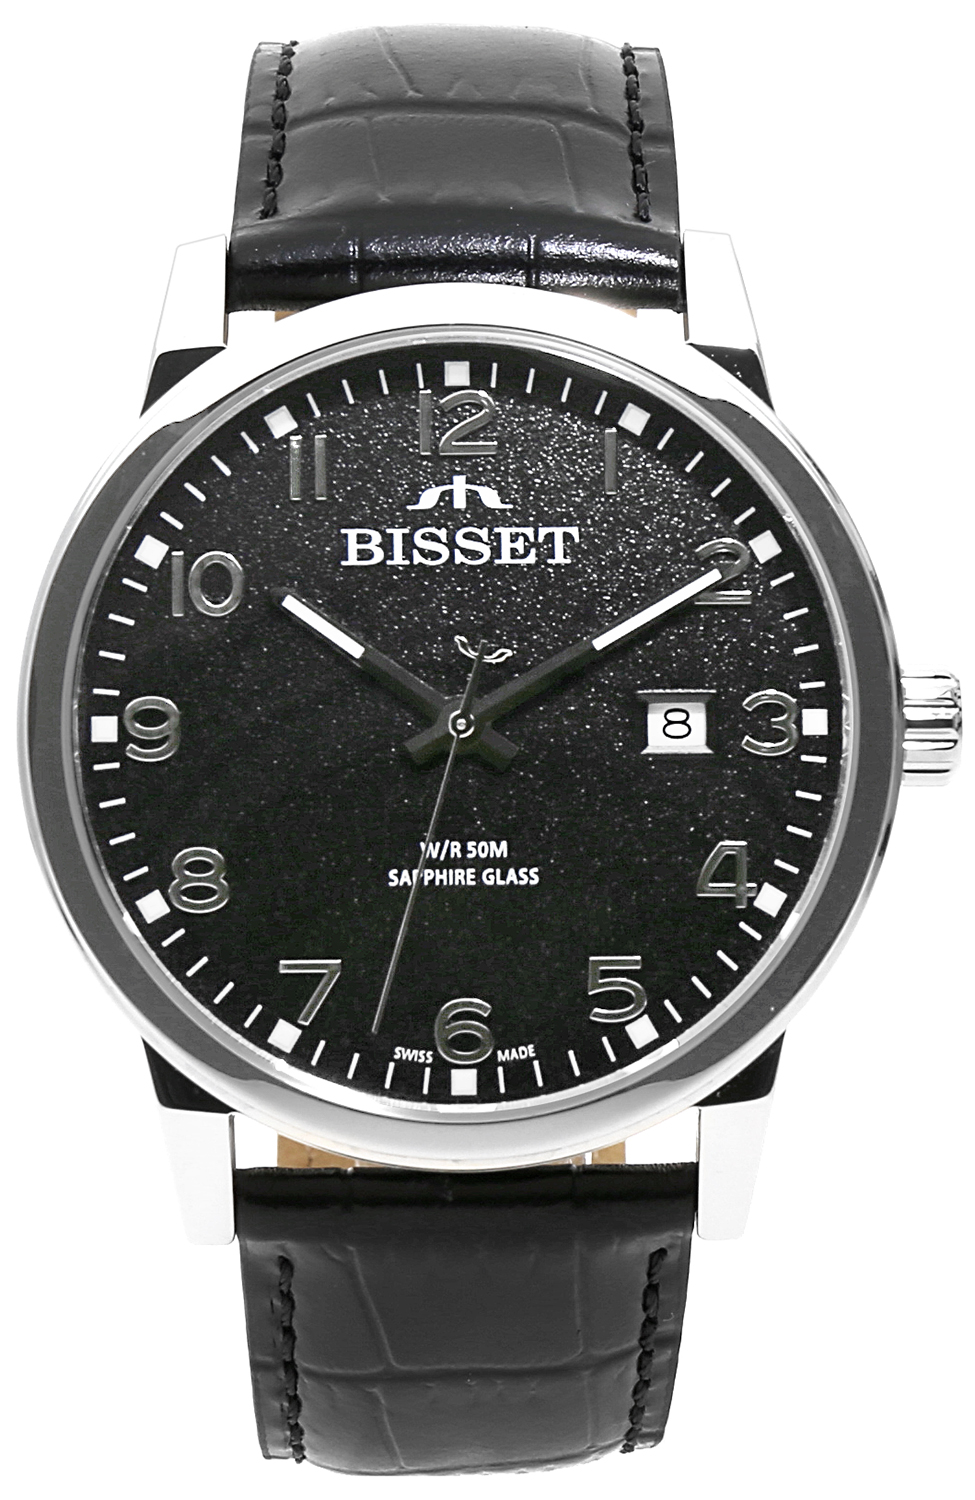 Zegarek Bisset BIS183 BSCE62 srebrny czarny - Natychmiastowa WYSYŁKA 0zł (DHL DPD INPOST) | Grawer 1zł | Zwrot 100 dni